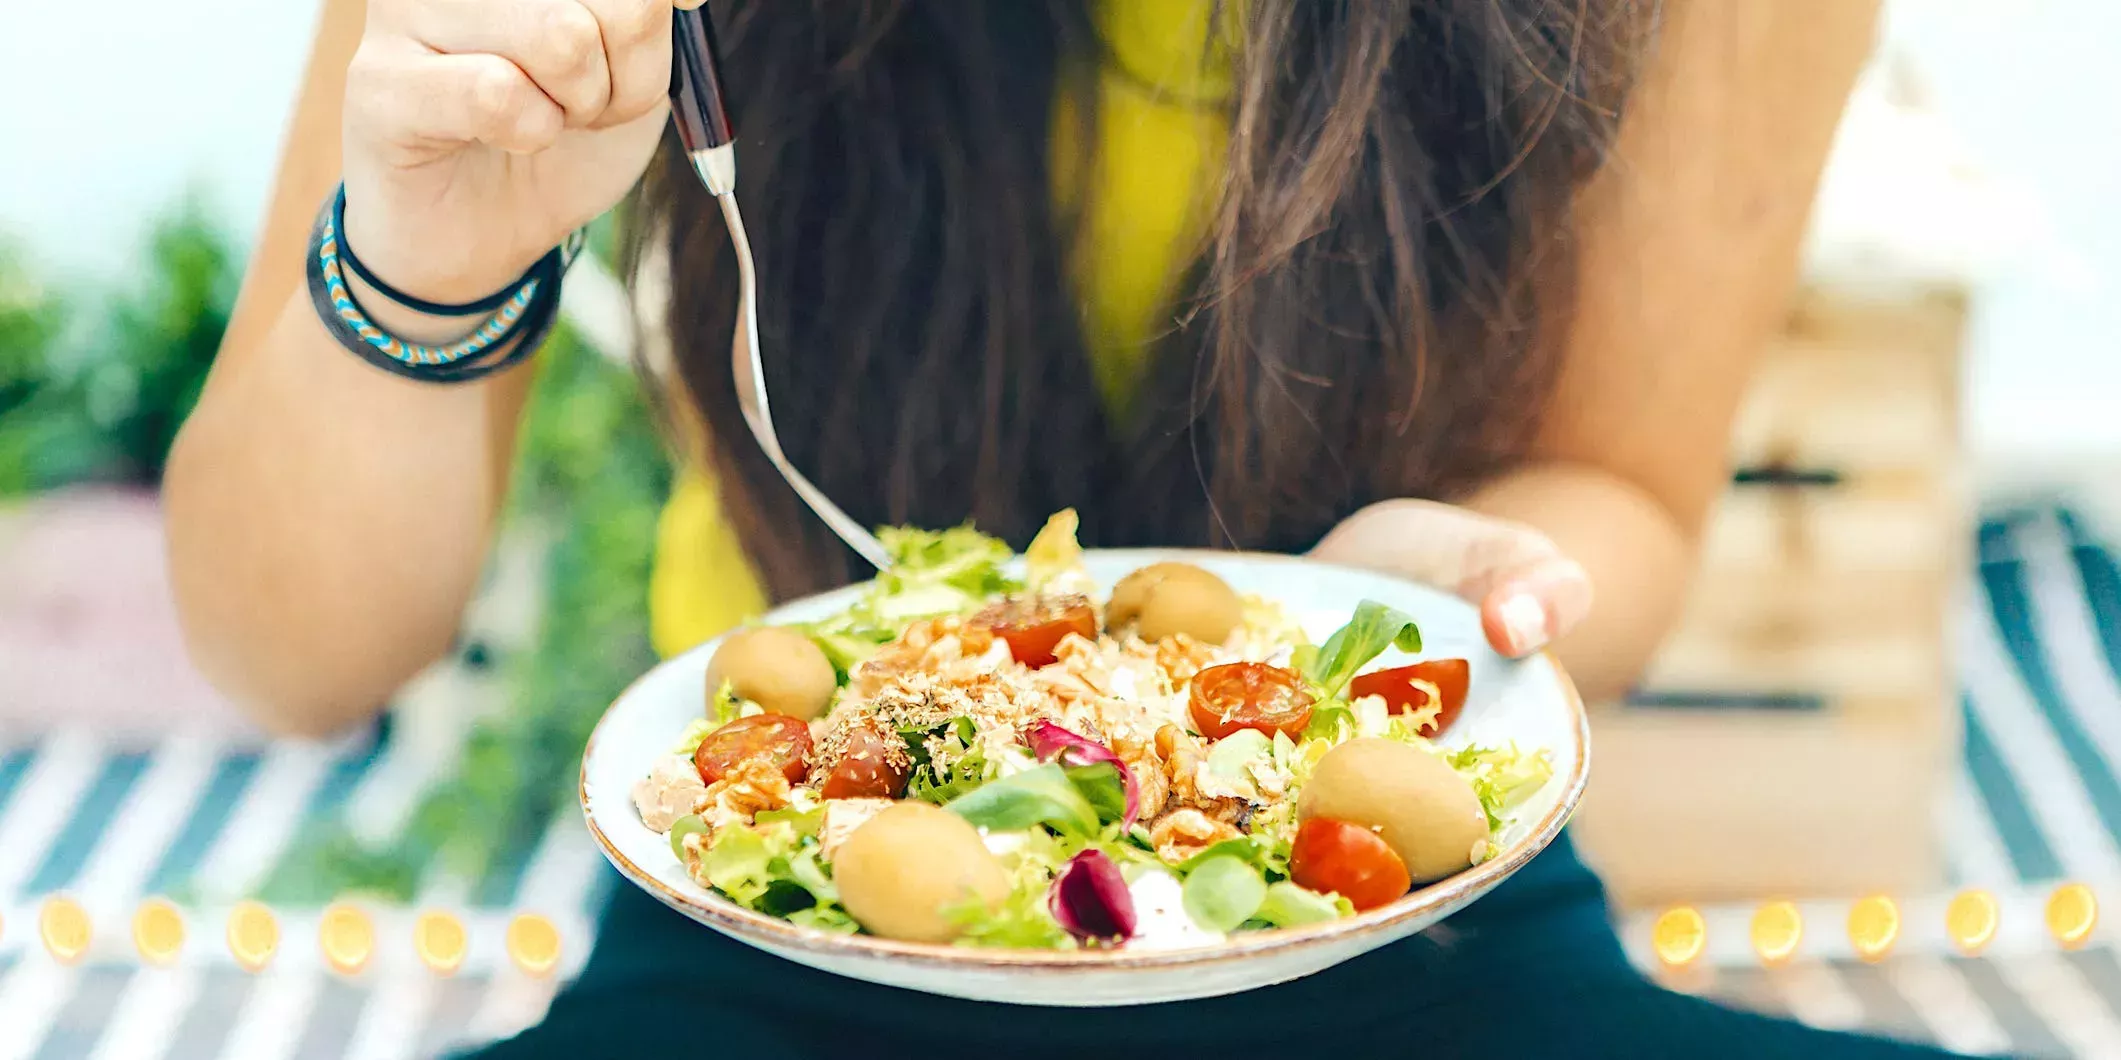 Es probable que estés comiendo demasiadas grasas saturadas y sodio y no suficientes verduras - incluso si crees que tienes una dieta saludable